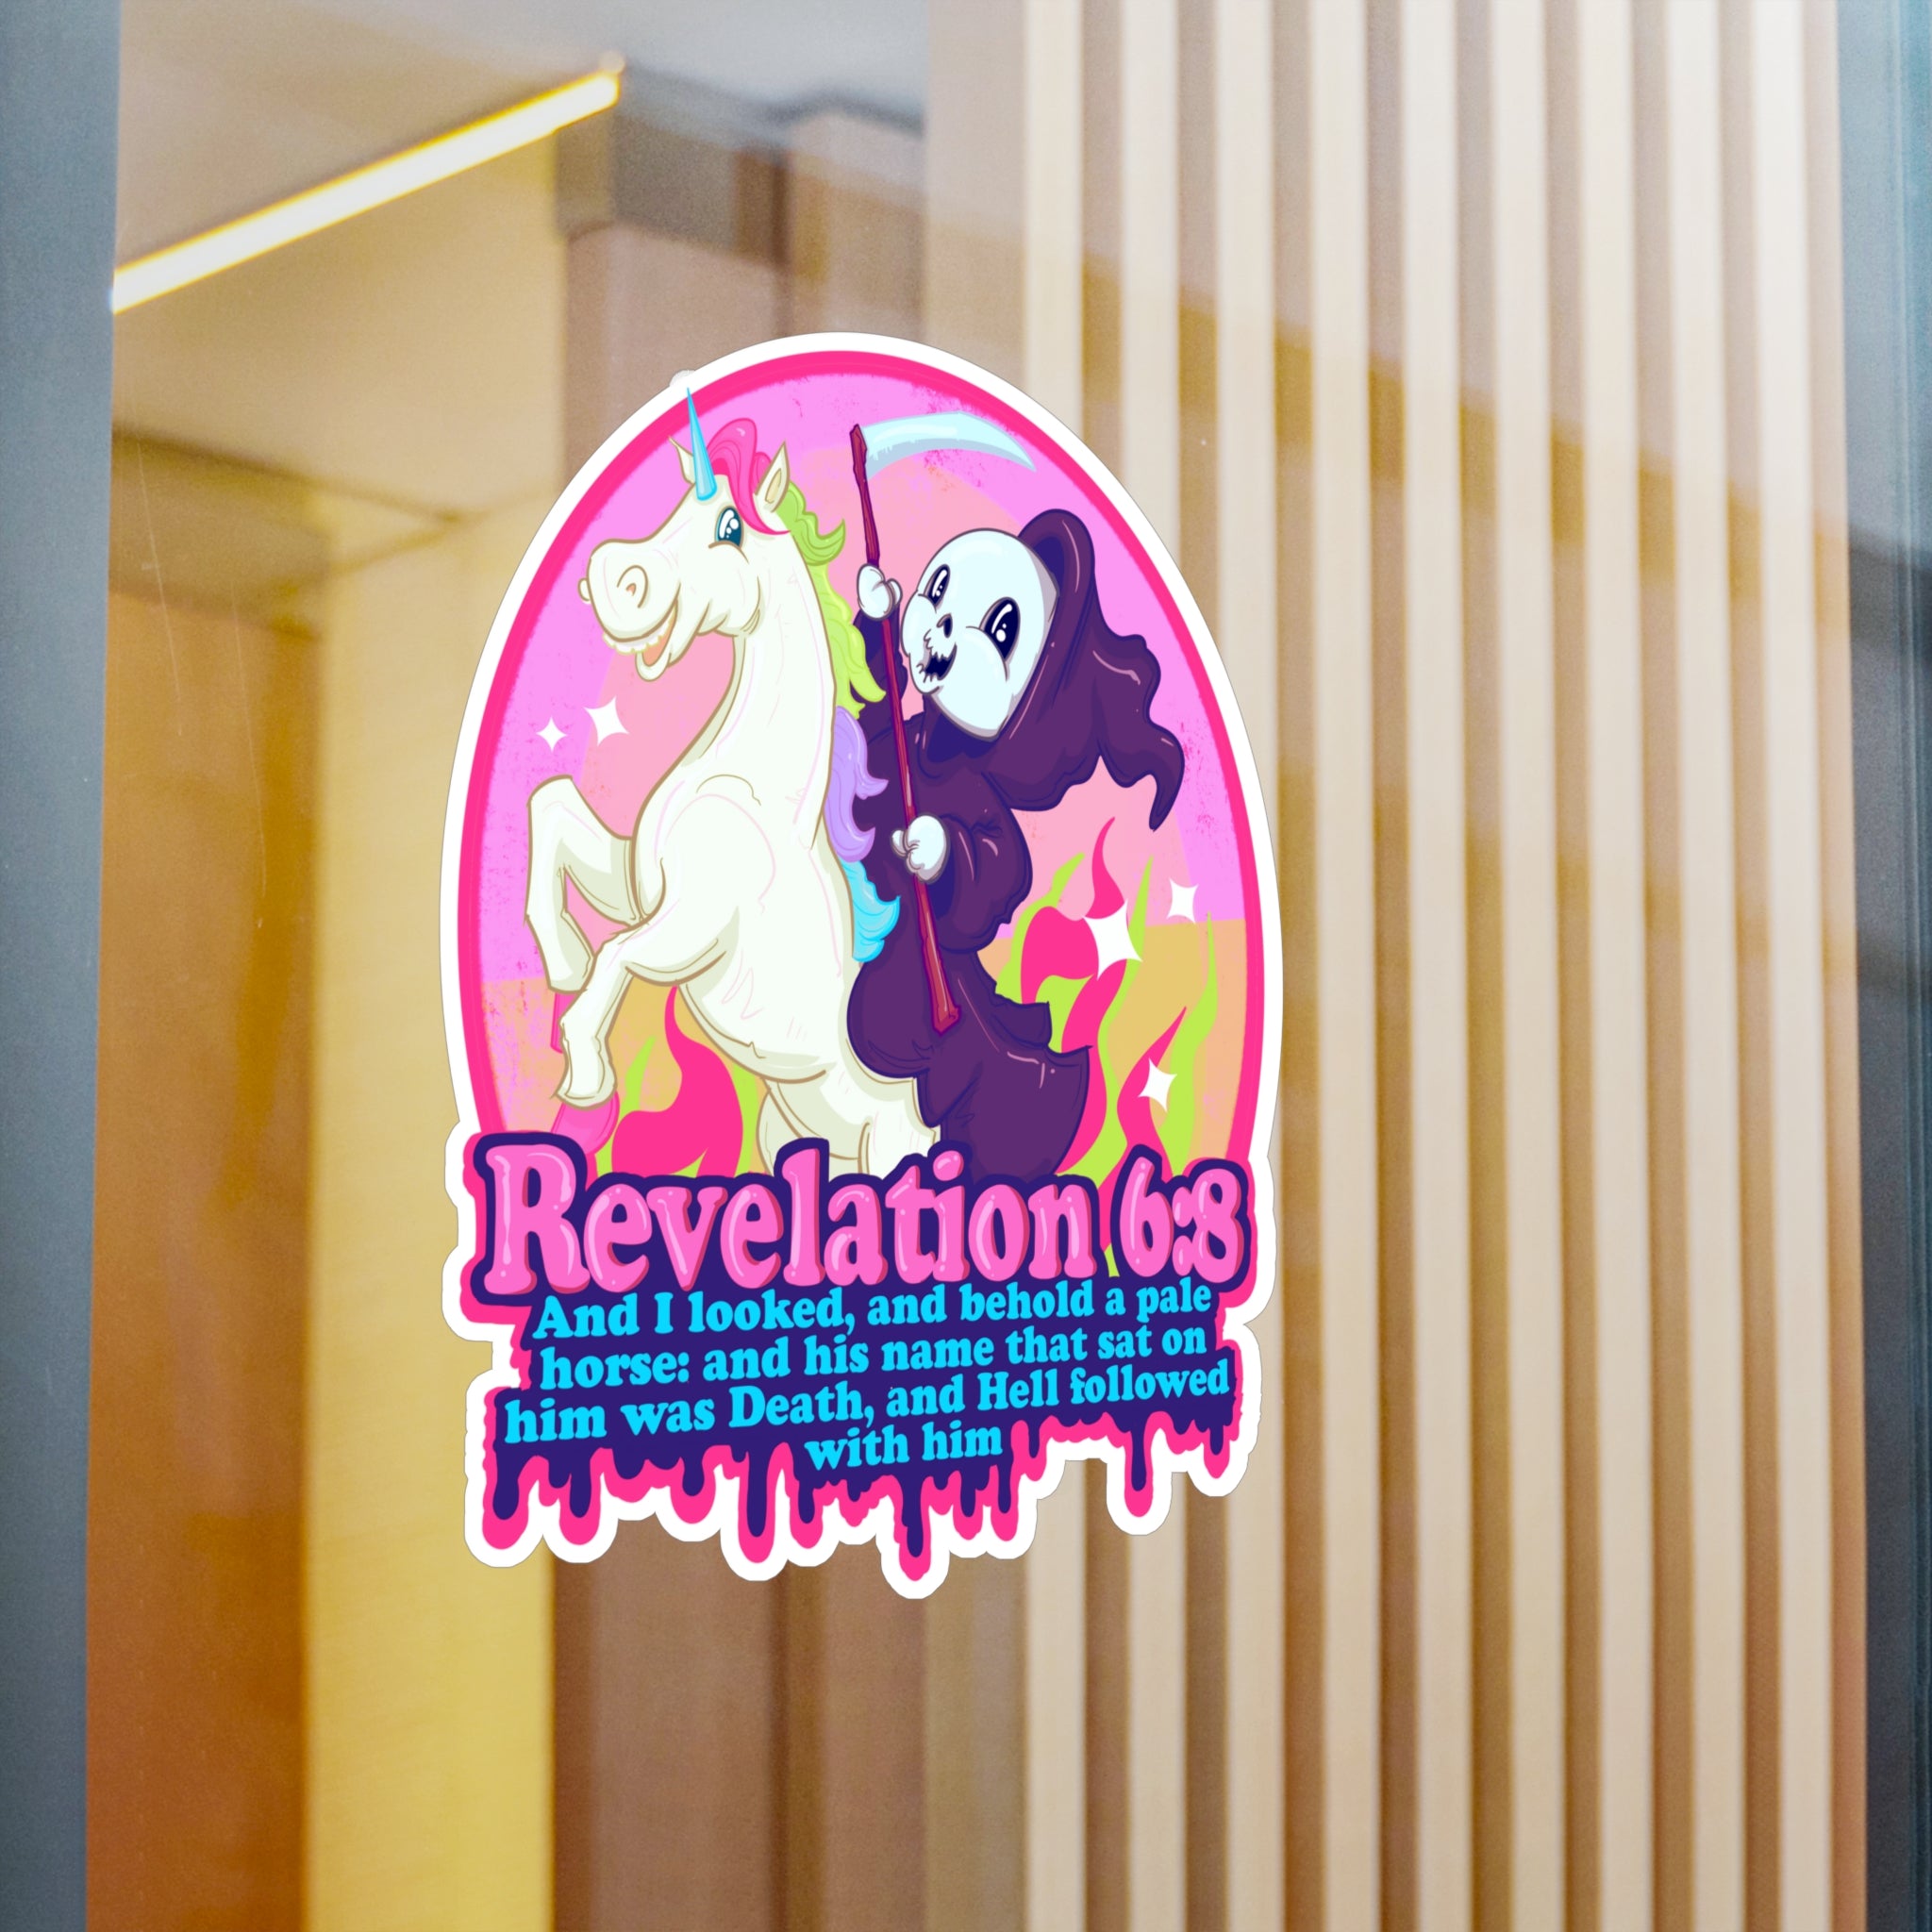 Revelation 6:8 Sticker for Sale by LVBART